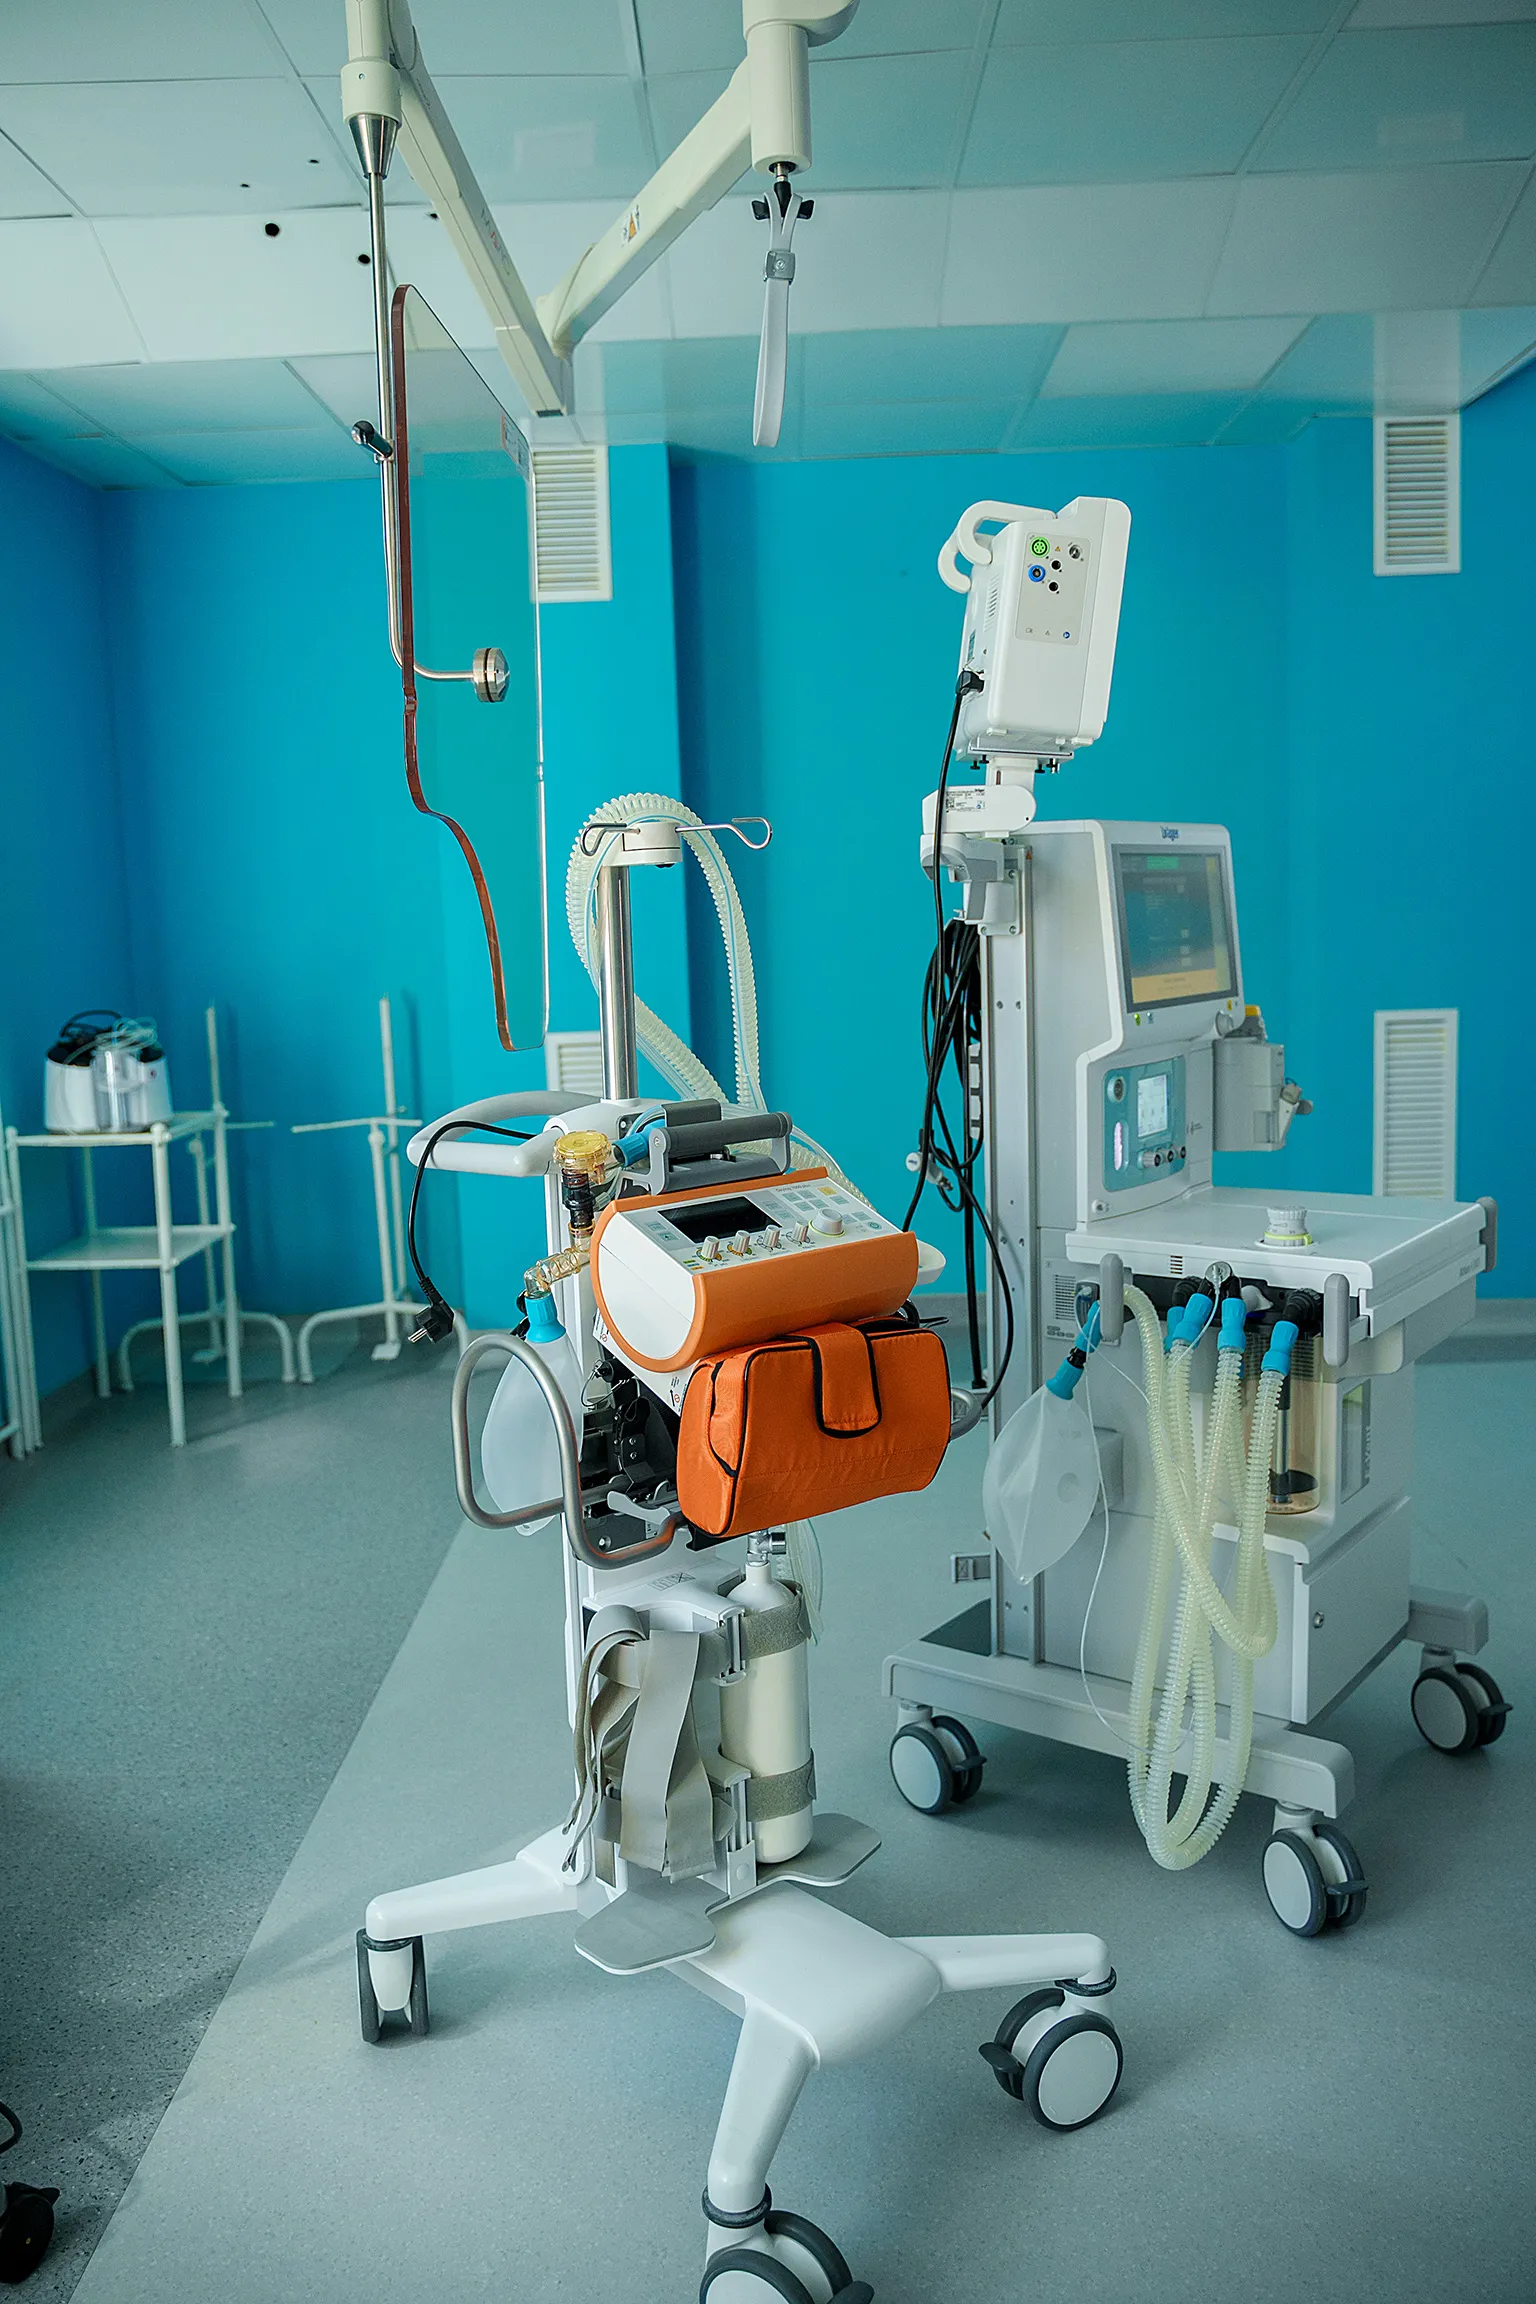 Вінницю підсилили новим високотехнологічним медичним обладнанням, яке передали Вінниці з Карлсруе: де і чим допомогли іноземні партнери